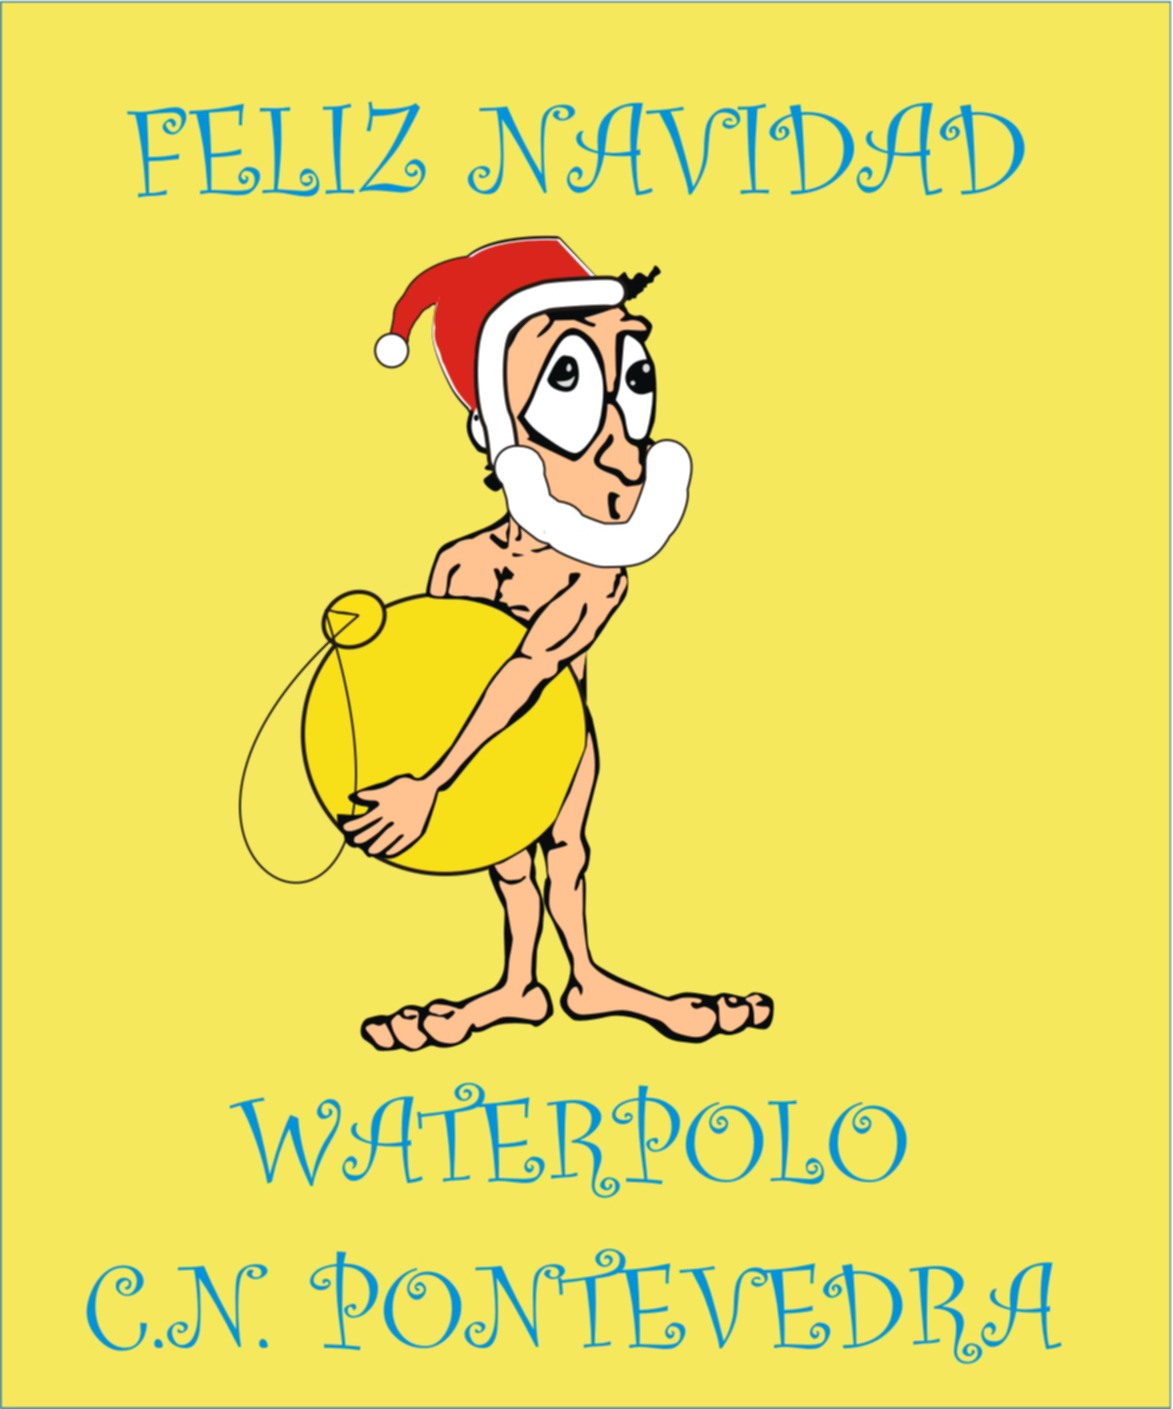 [FelizNavidad+Waterpolo+Pontevedra.jpg]